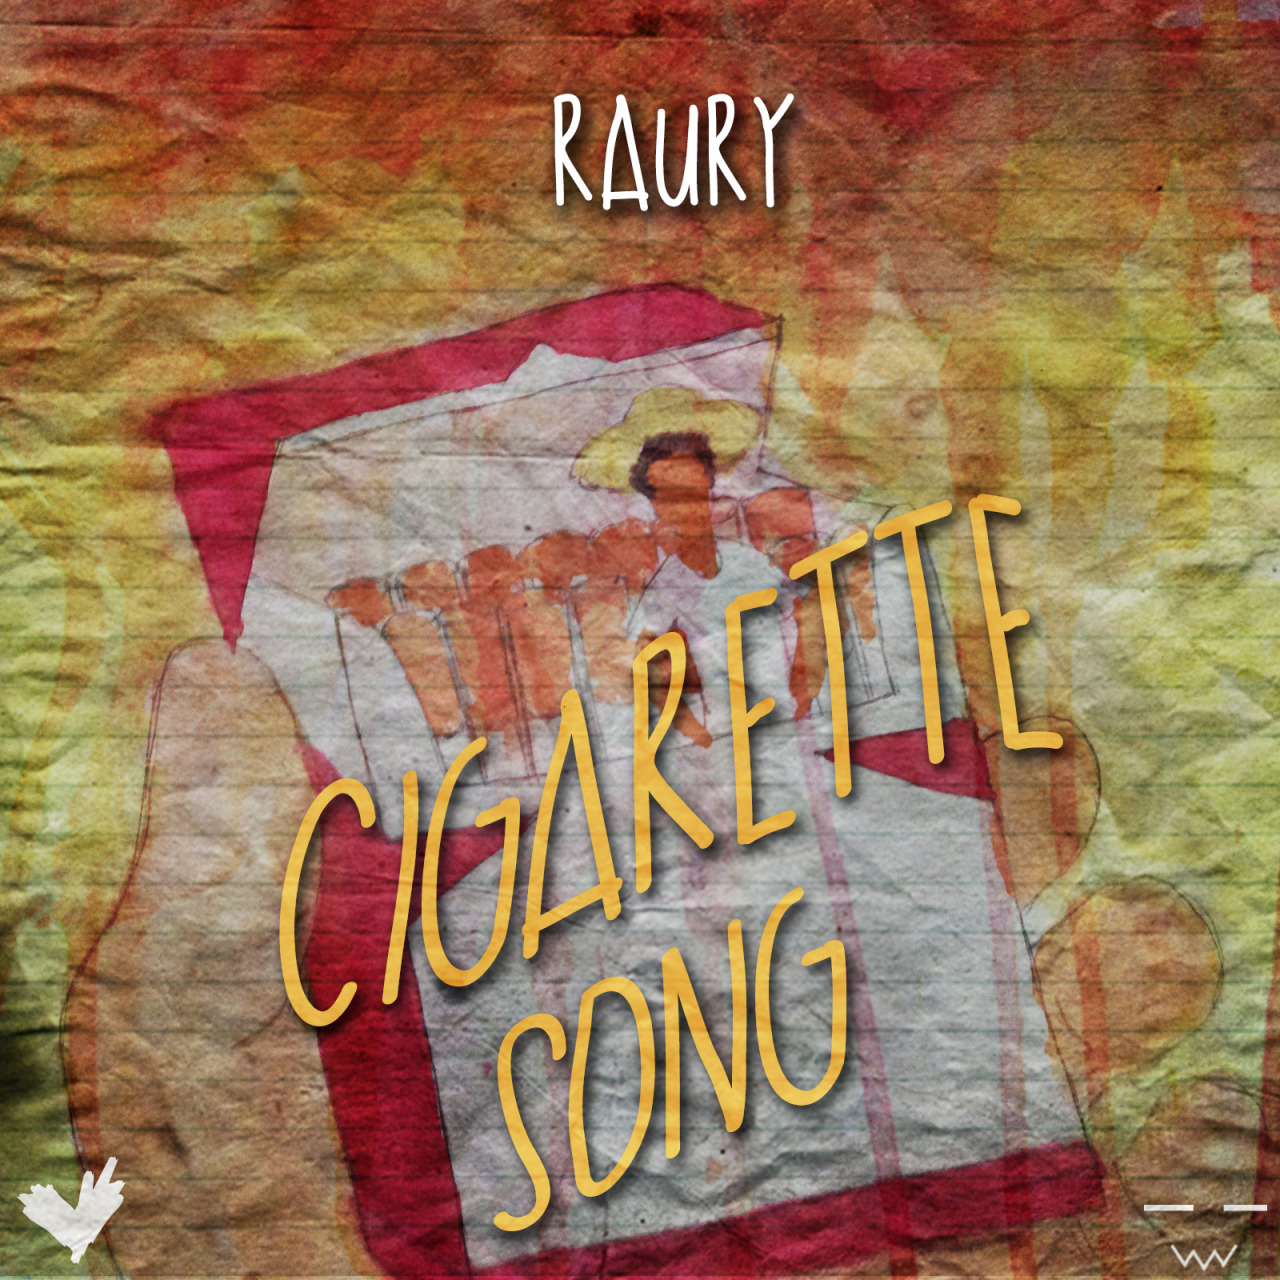 kingraur:
“Raury - Cigarette Song (Prod. By DAYTRIP & Raury)
everybody has an addiction.
”